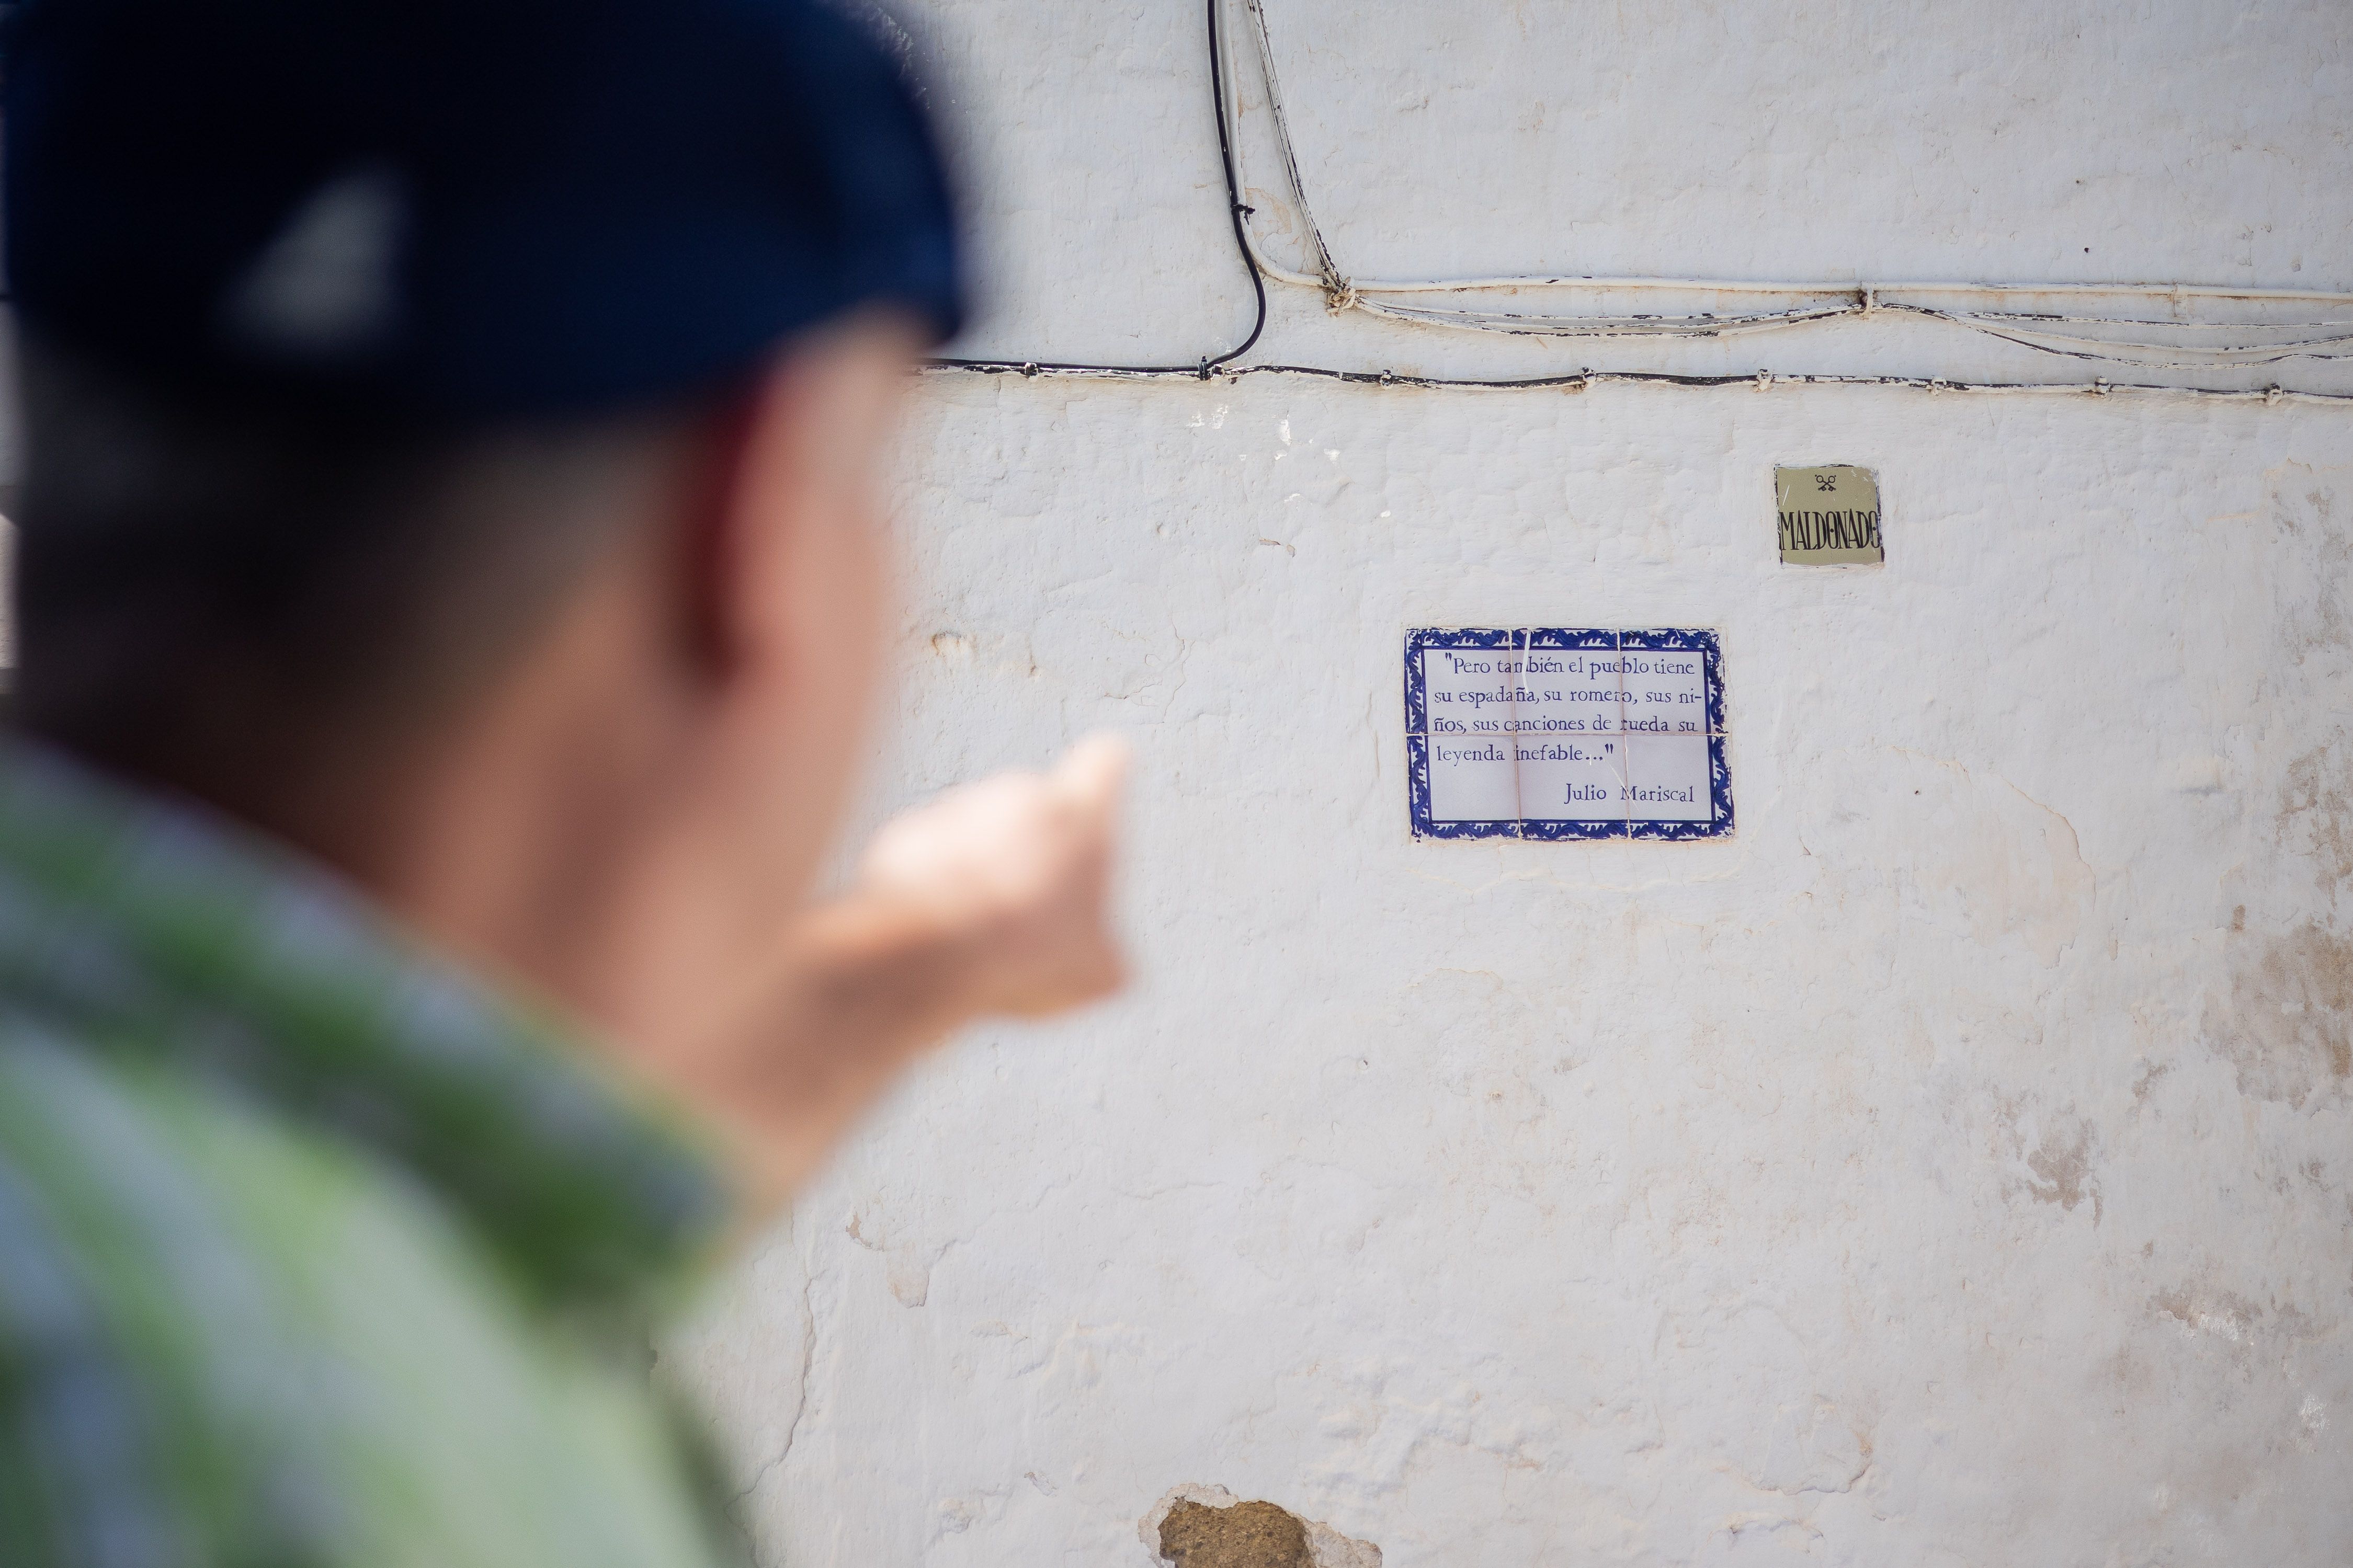 El arcense señala un azulejo con versos de Julio Mariscal.